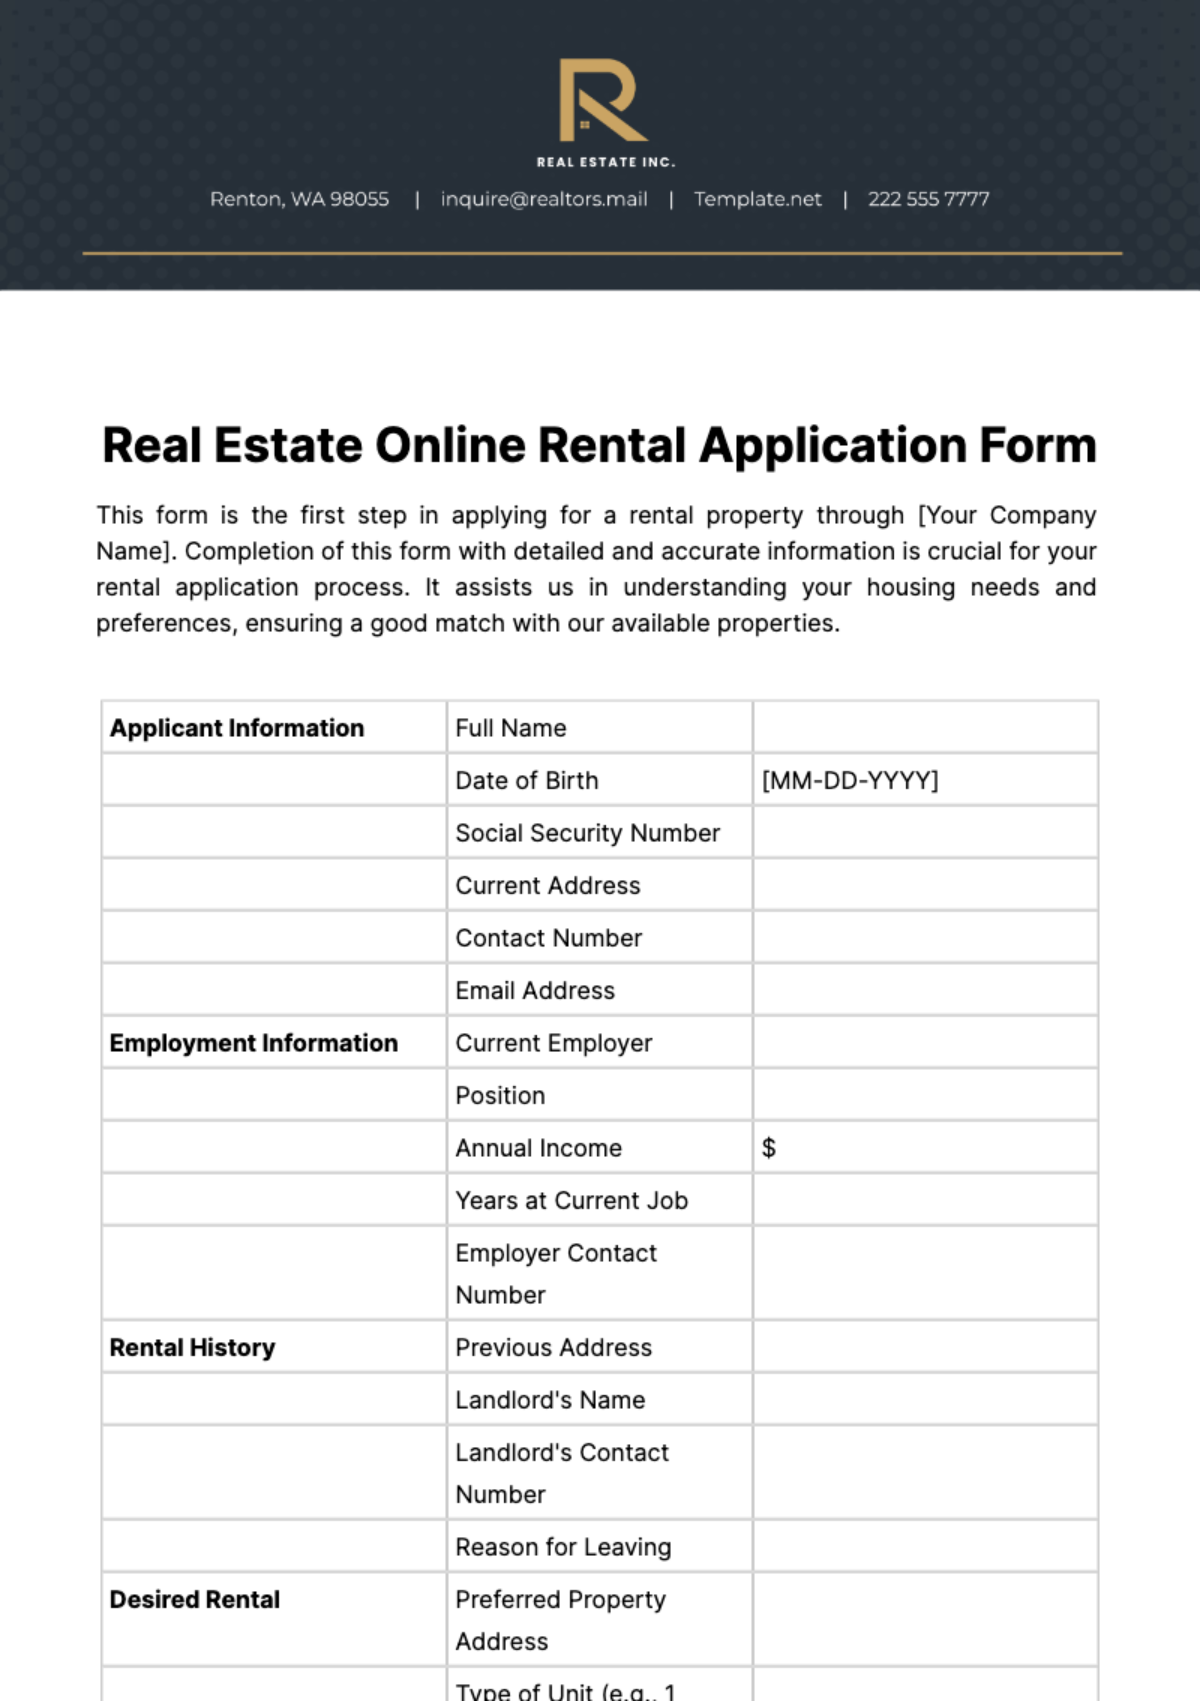 Real Estate Online Rental Application Form Template